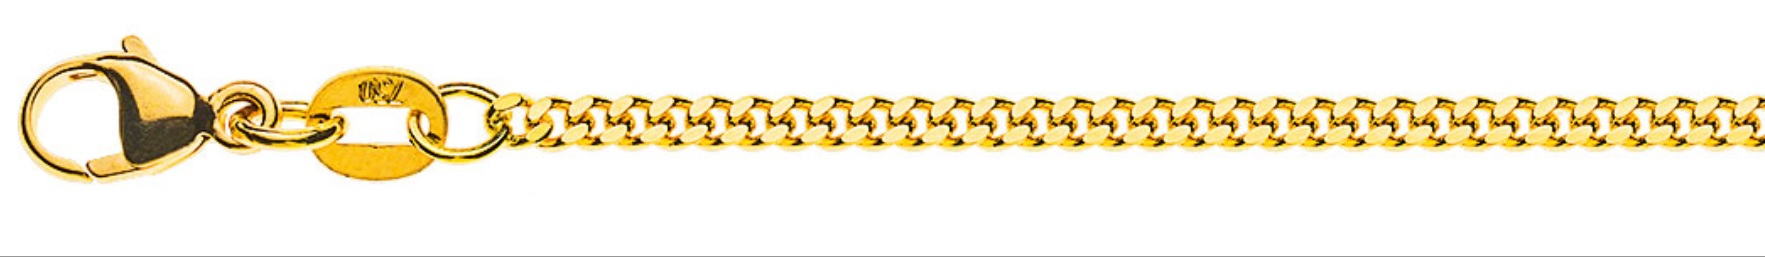 AURONOS Prestige Halskette Gelbgold 18K Panzerkette geschliffen 55cm 2.0mm